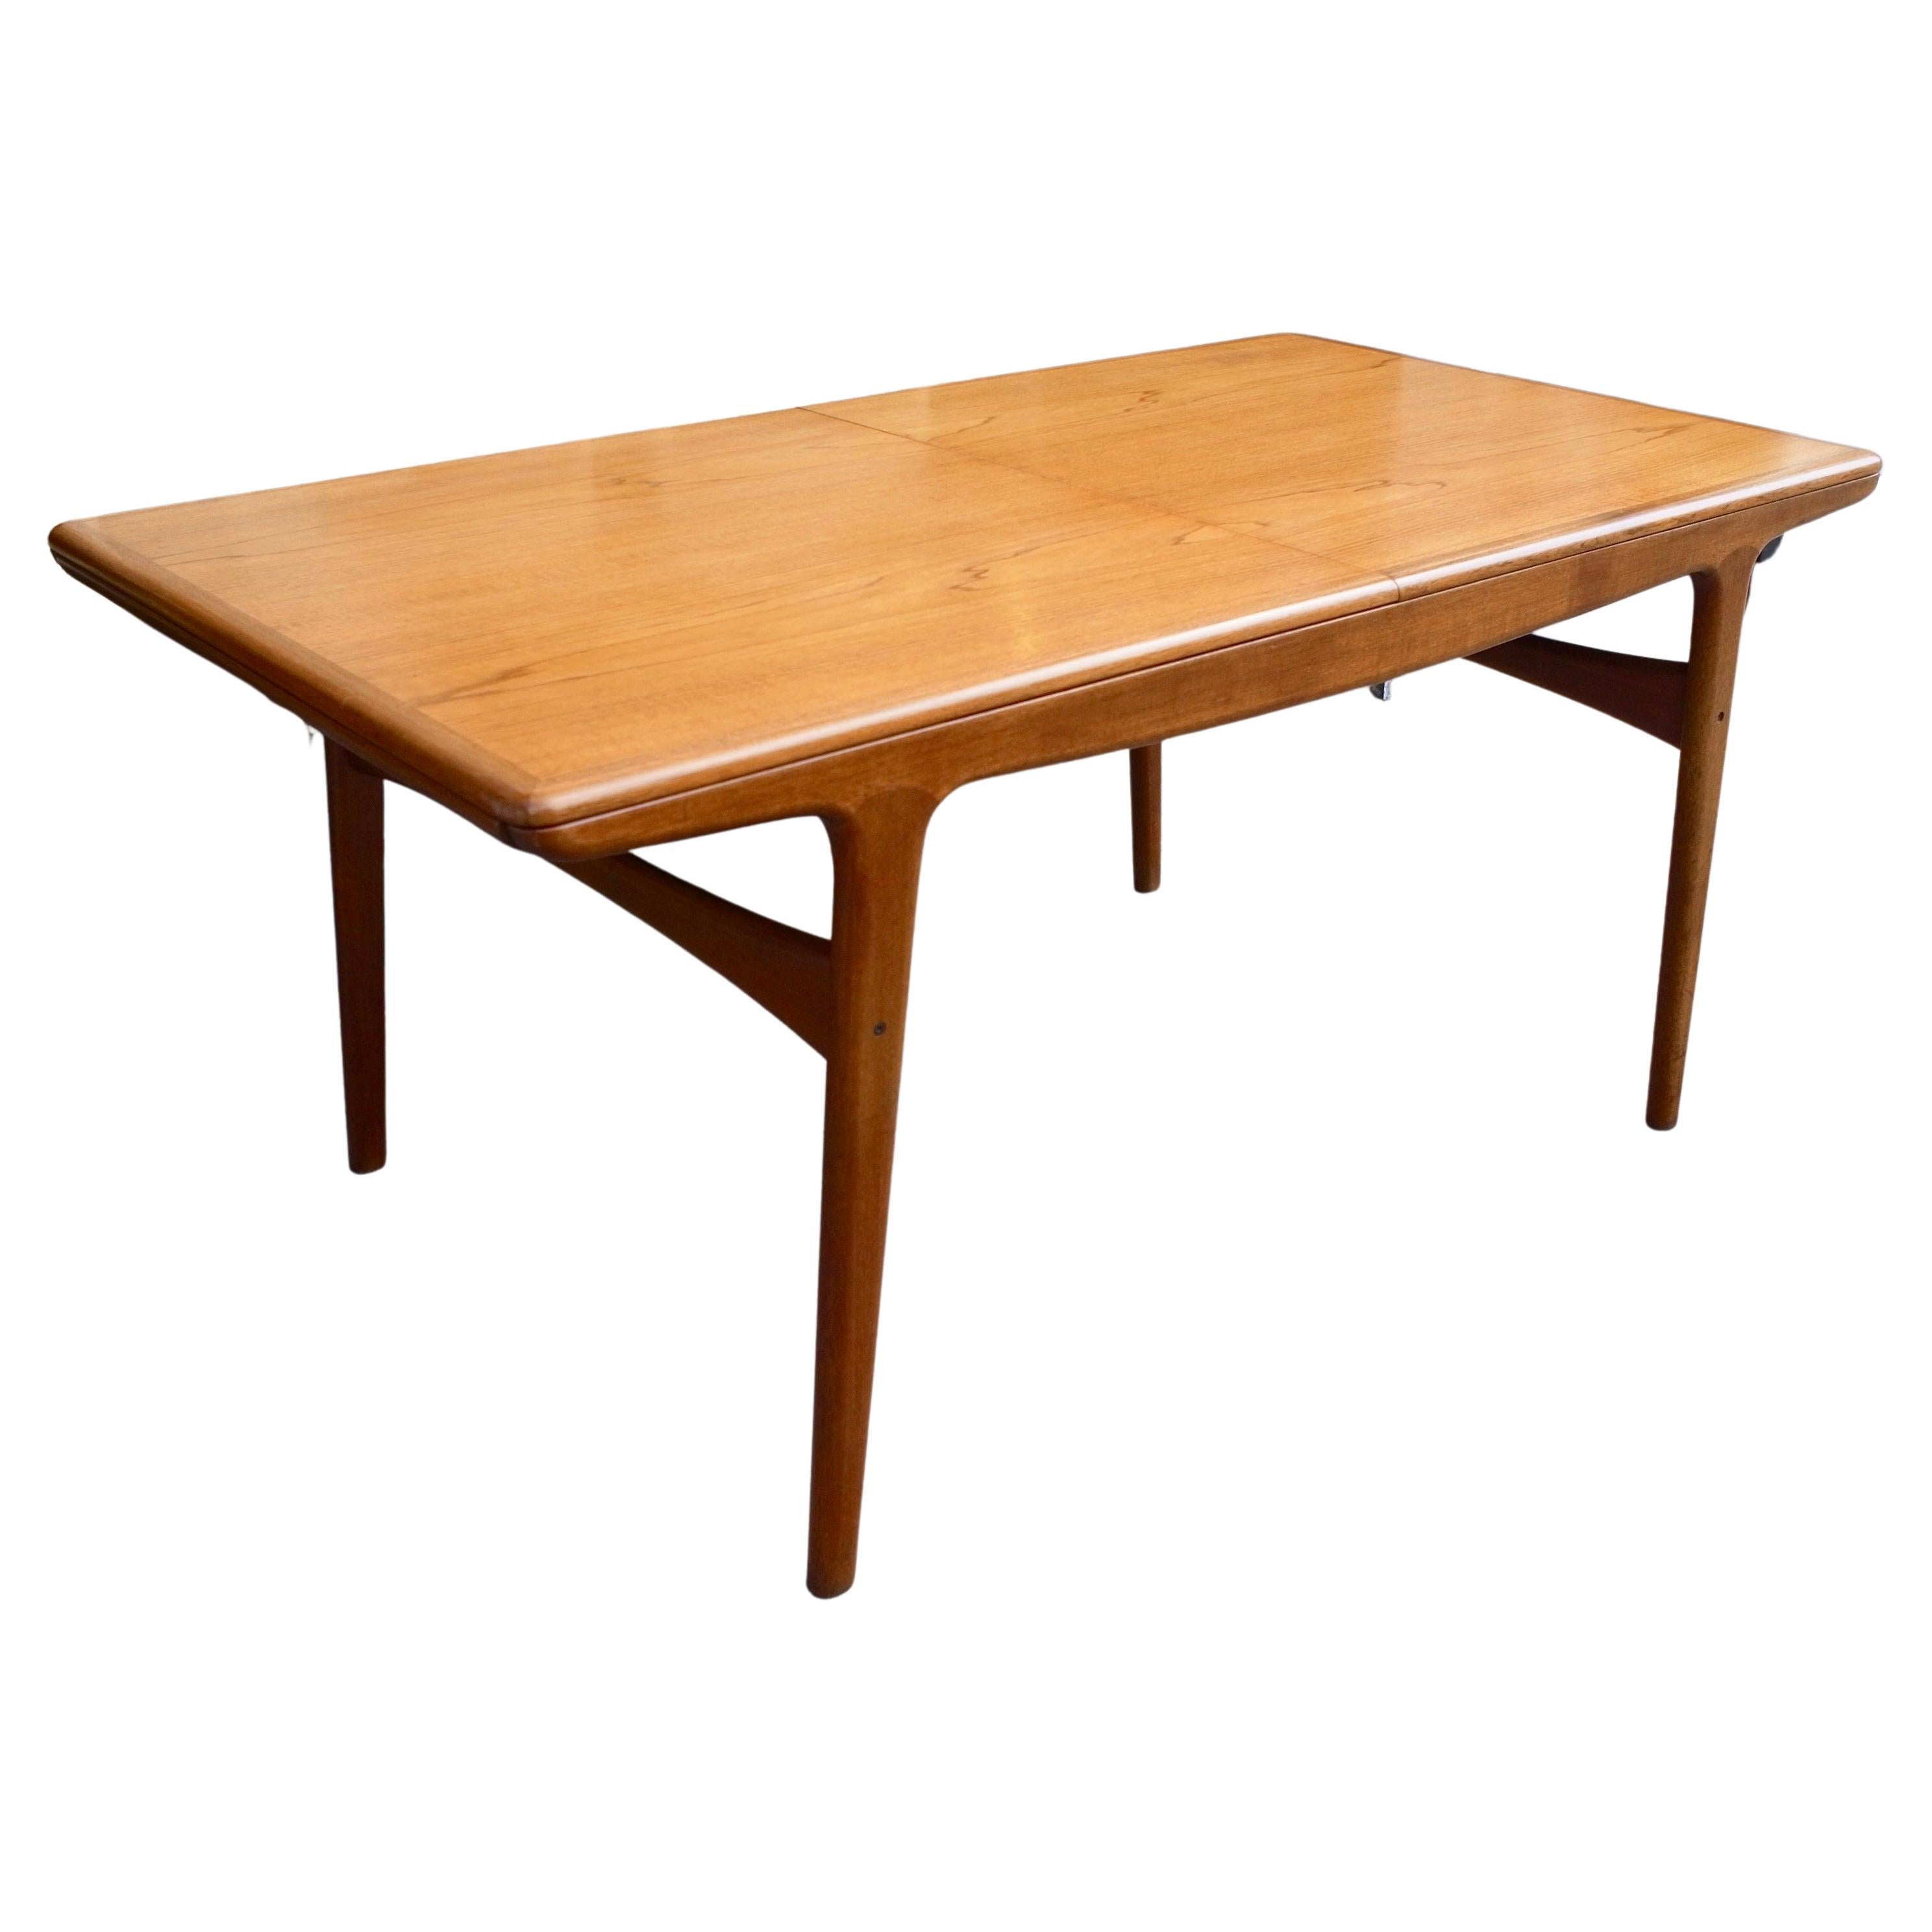 1960s Extending Teak Dining Table Designed by Arne Hovmand-Olsen for Mogens Kold